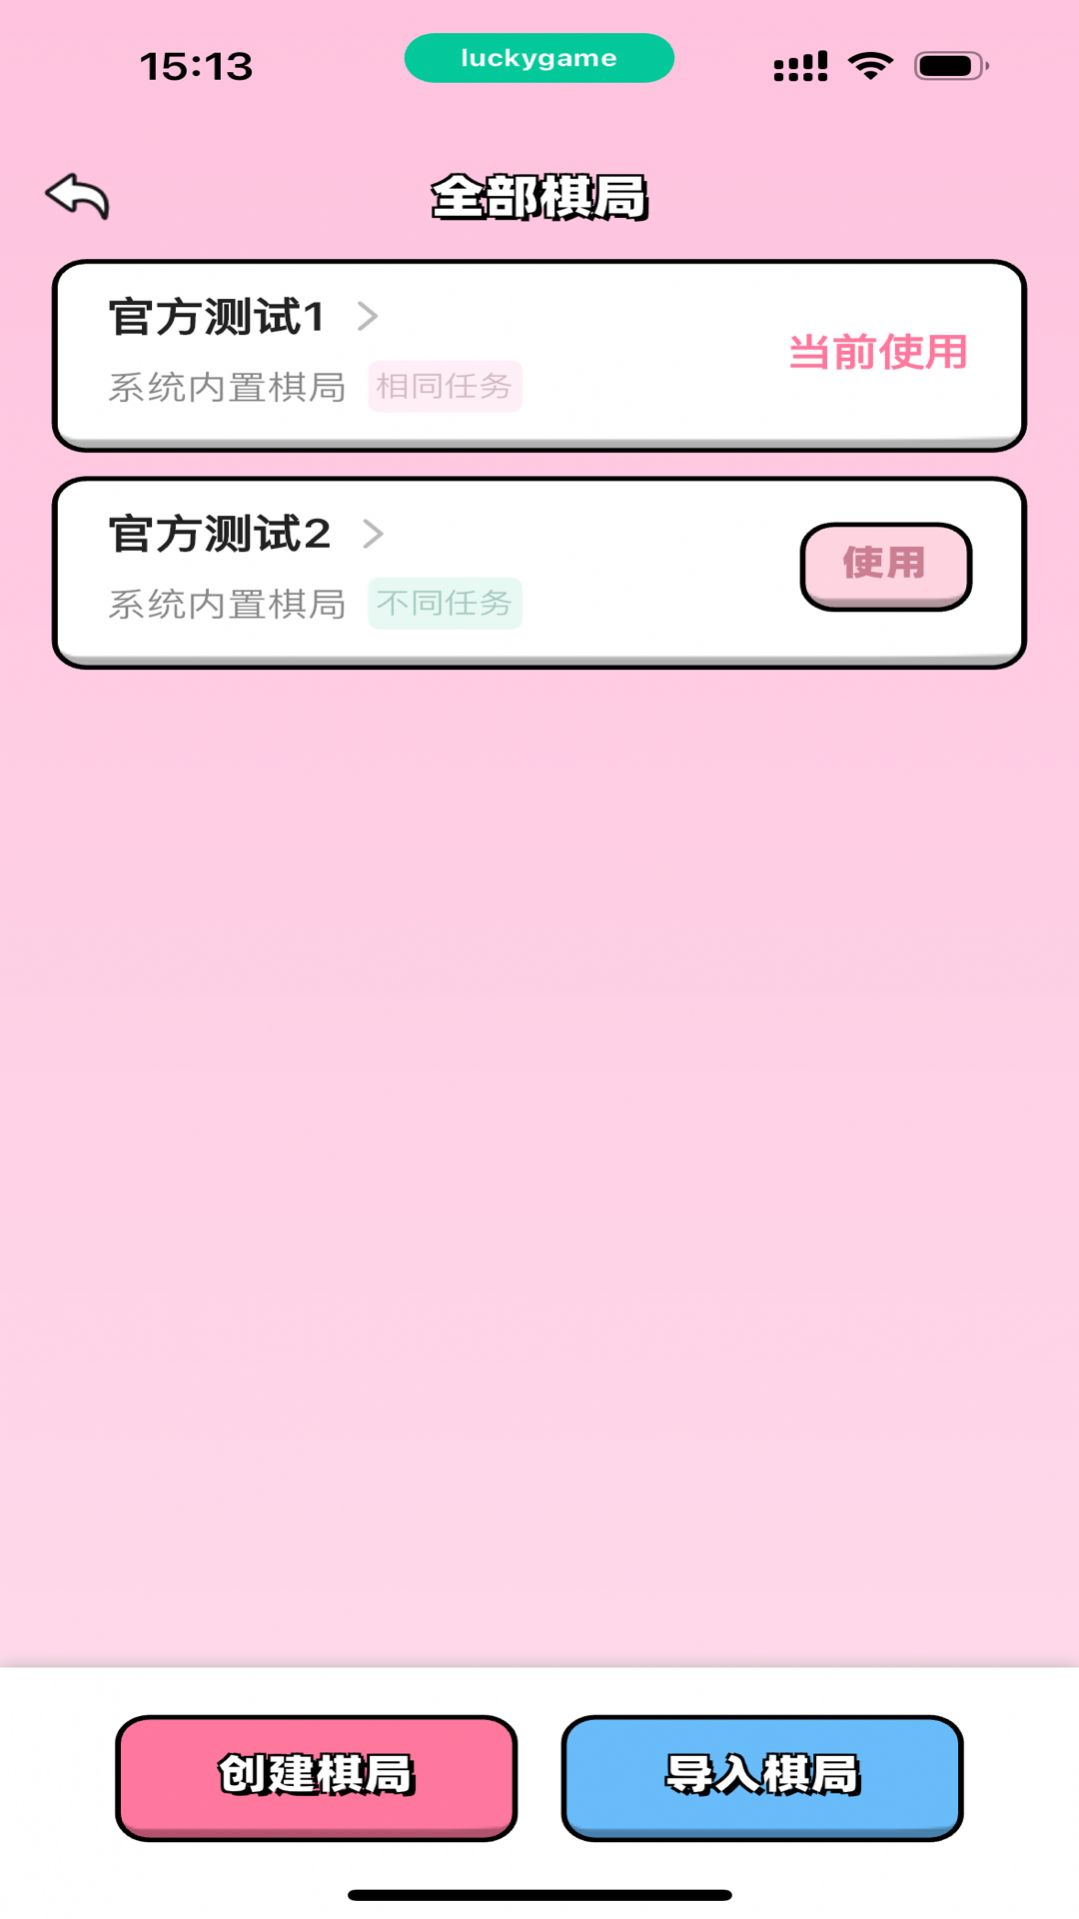 恋爱飞行棋app高阶版免费下载截图2: